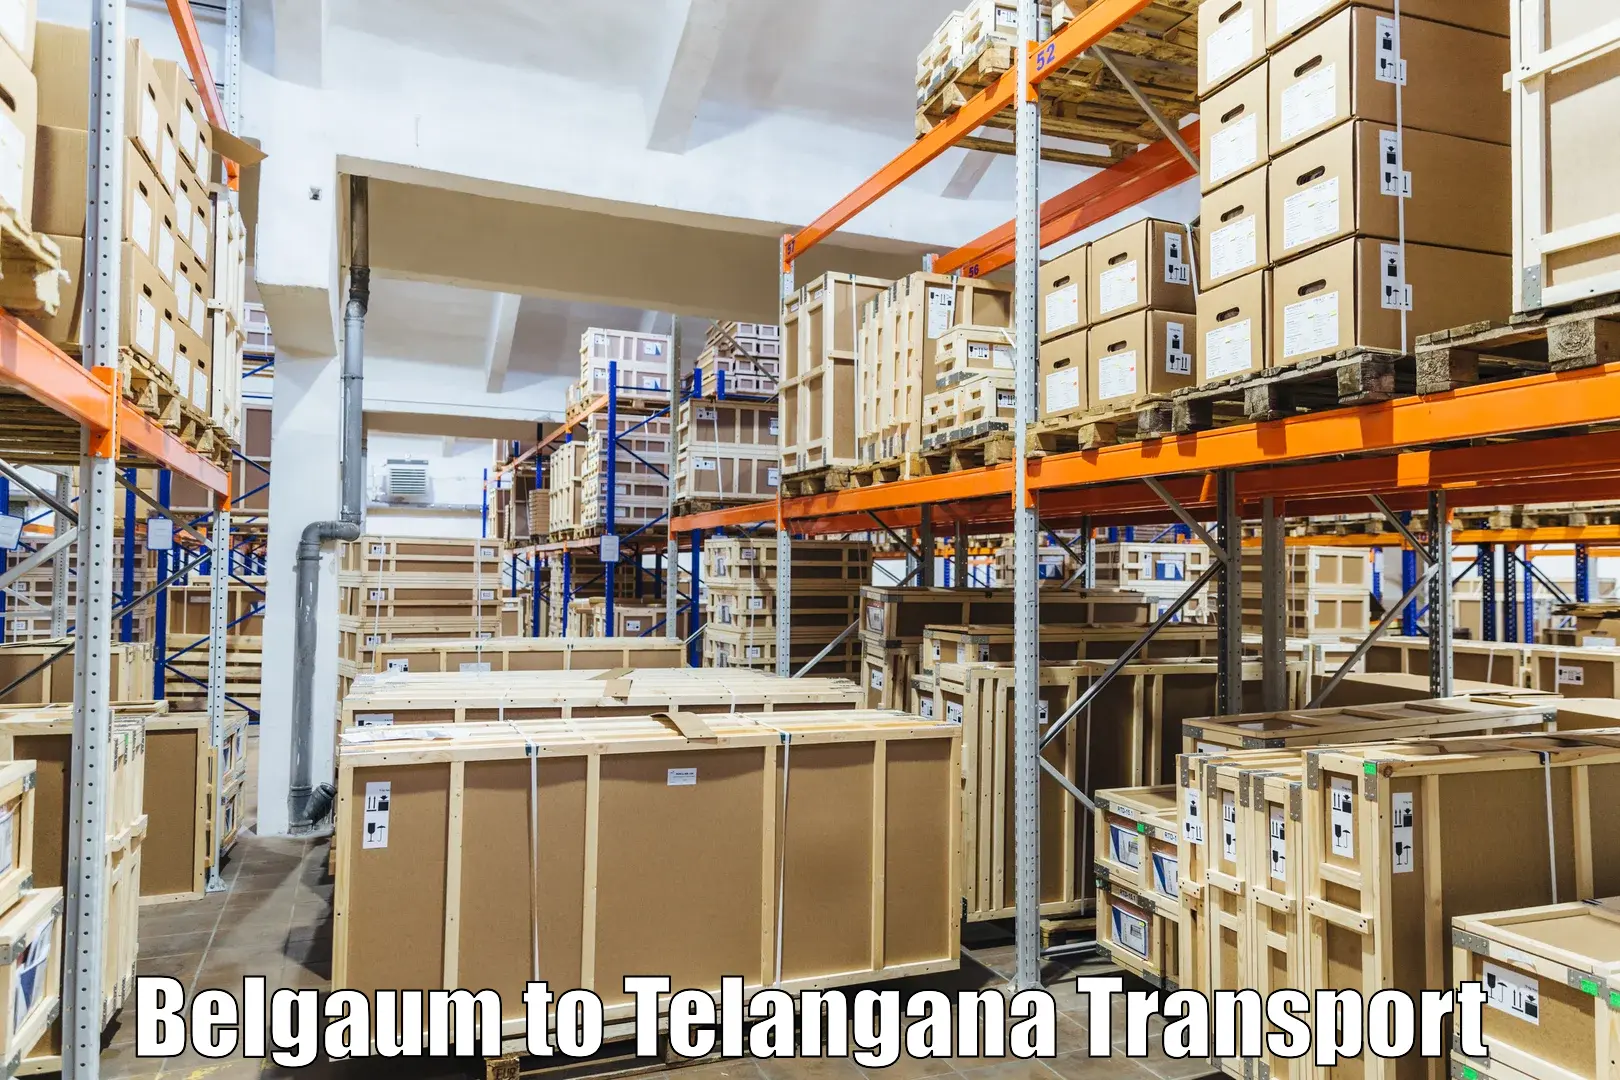 Shipping services Belgaum to Netrang